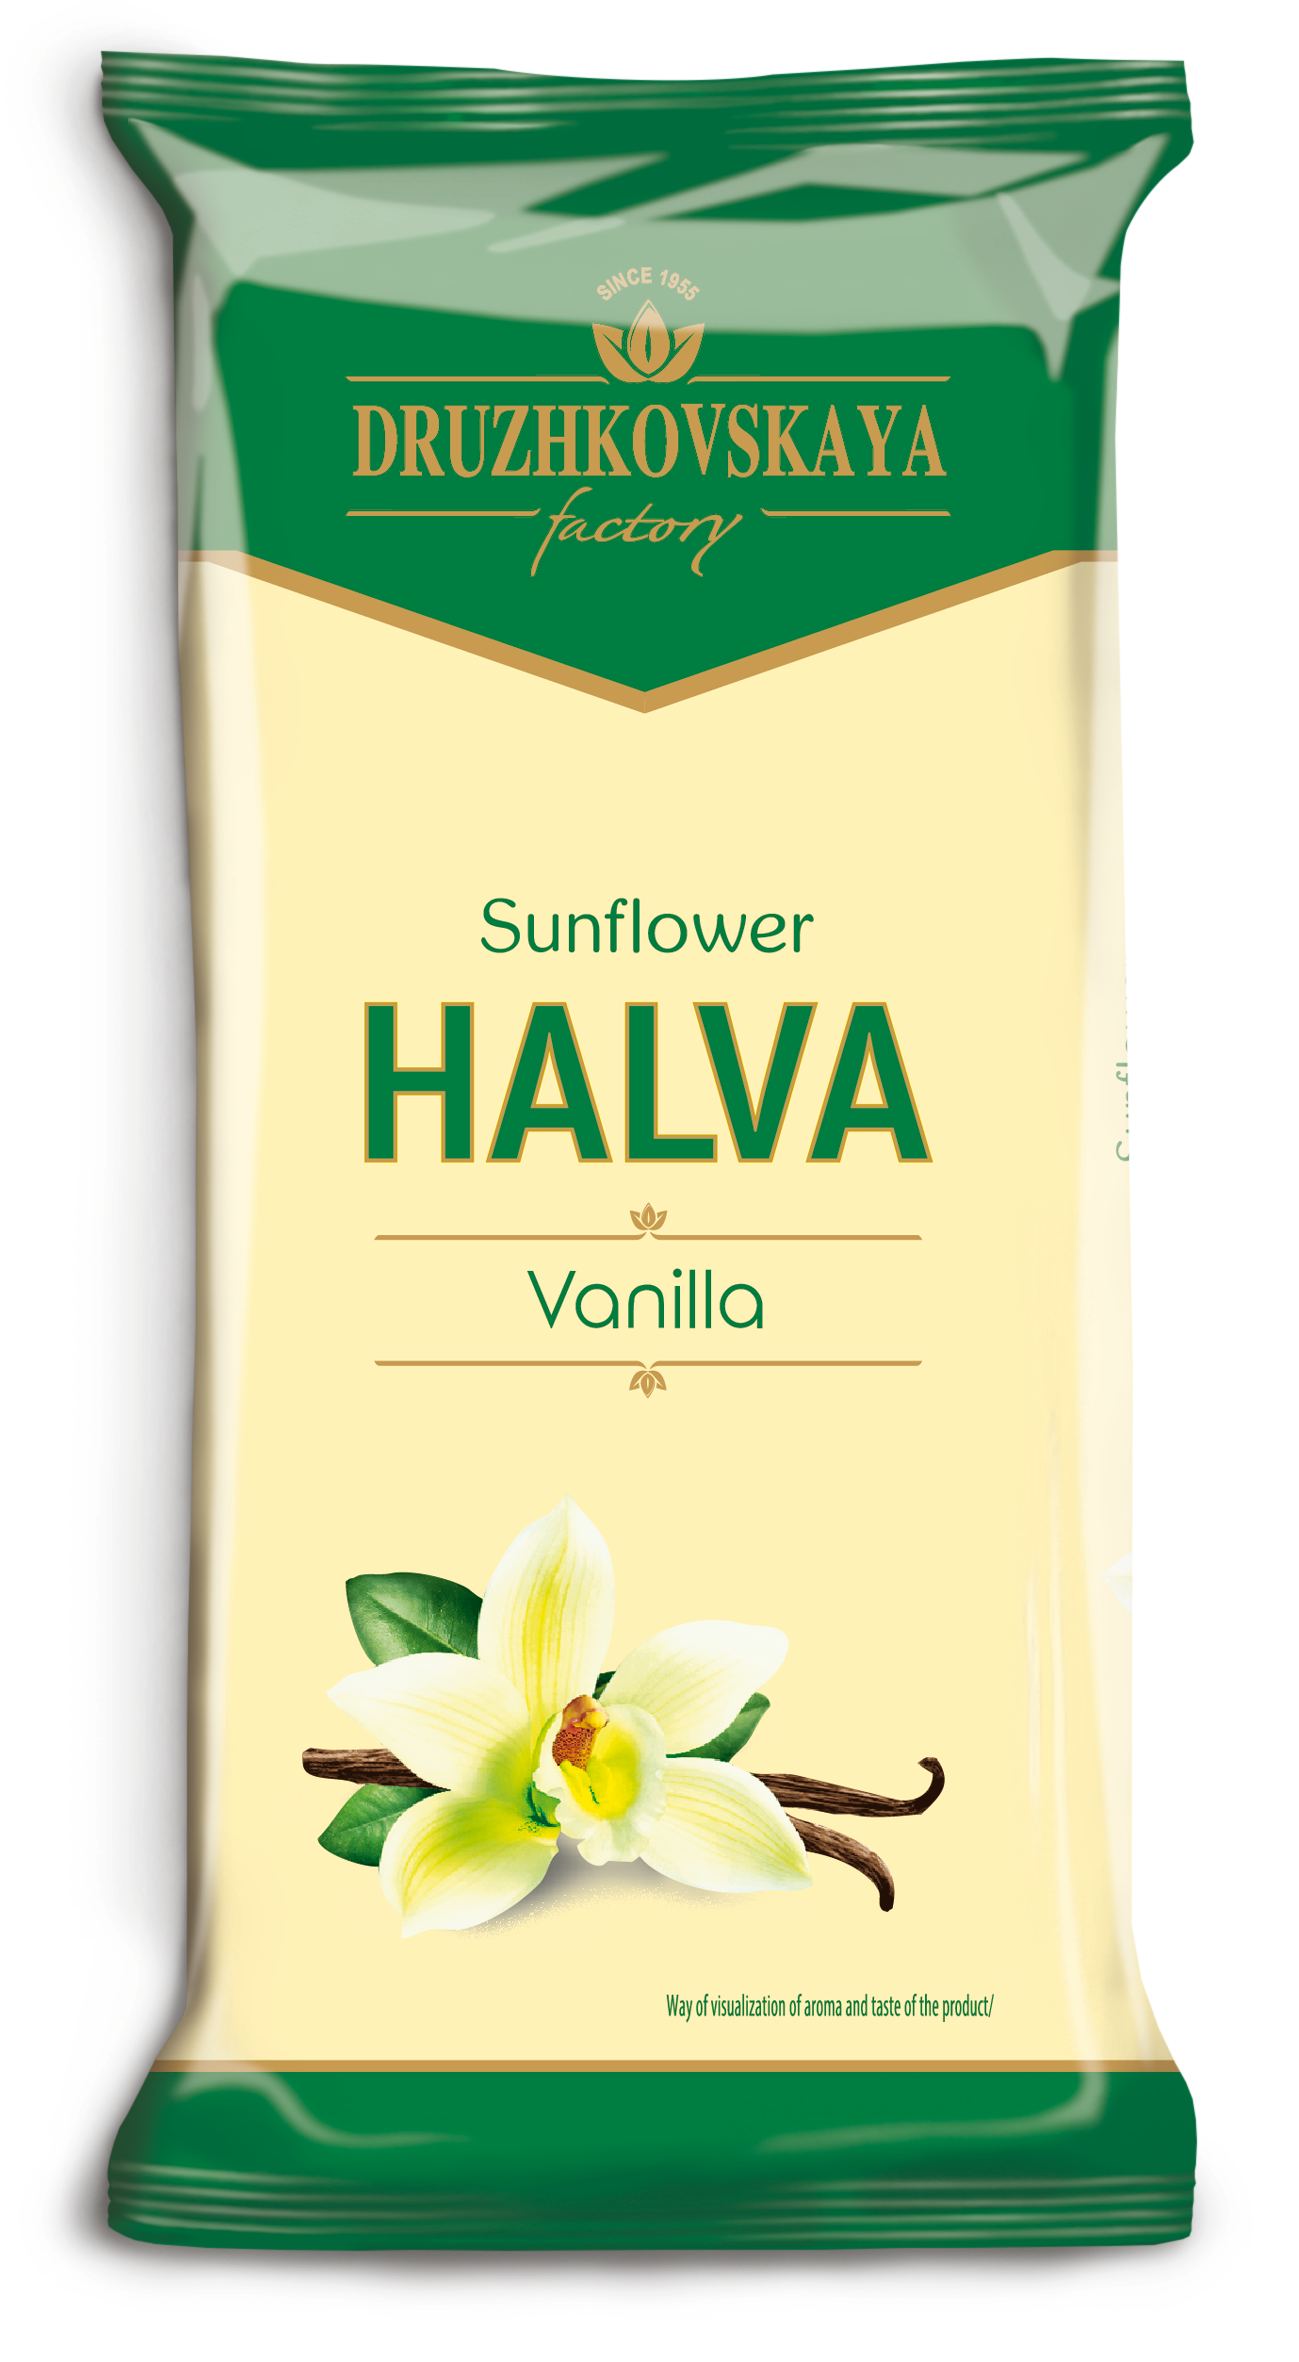 Sunflower Halva Vanilla Packed in Flow-pack, 350 g